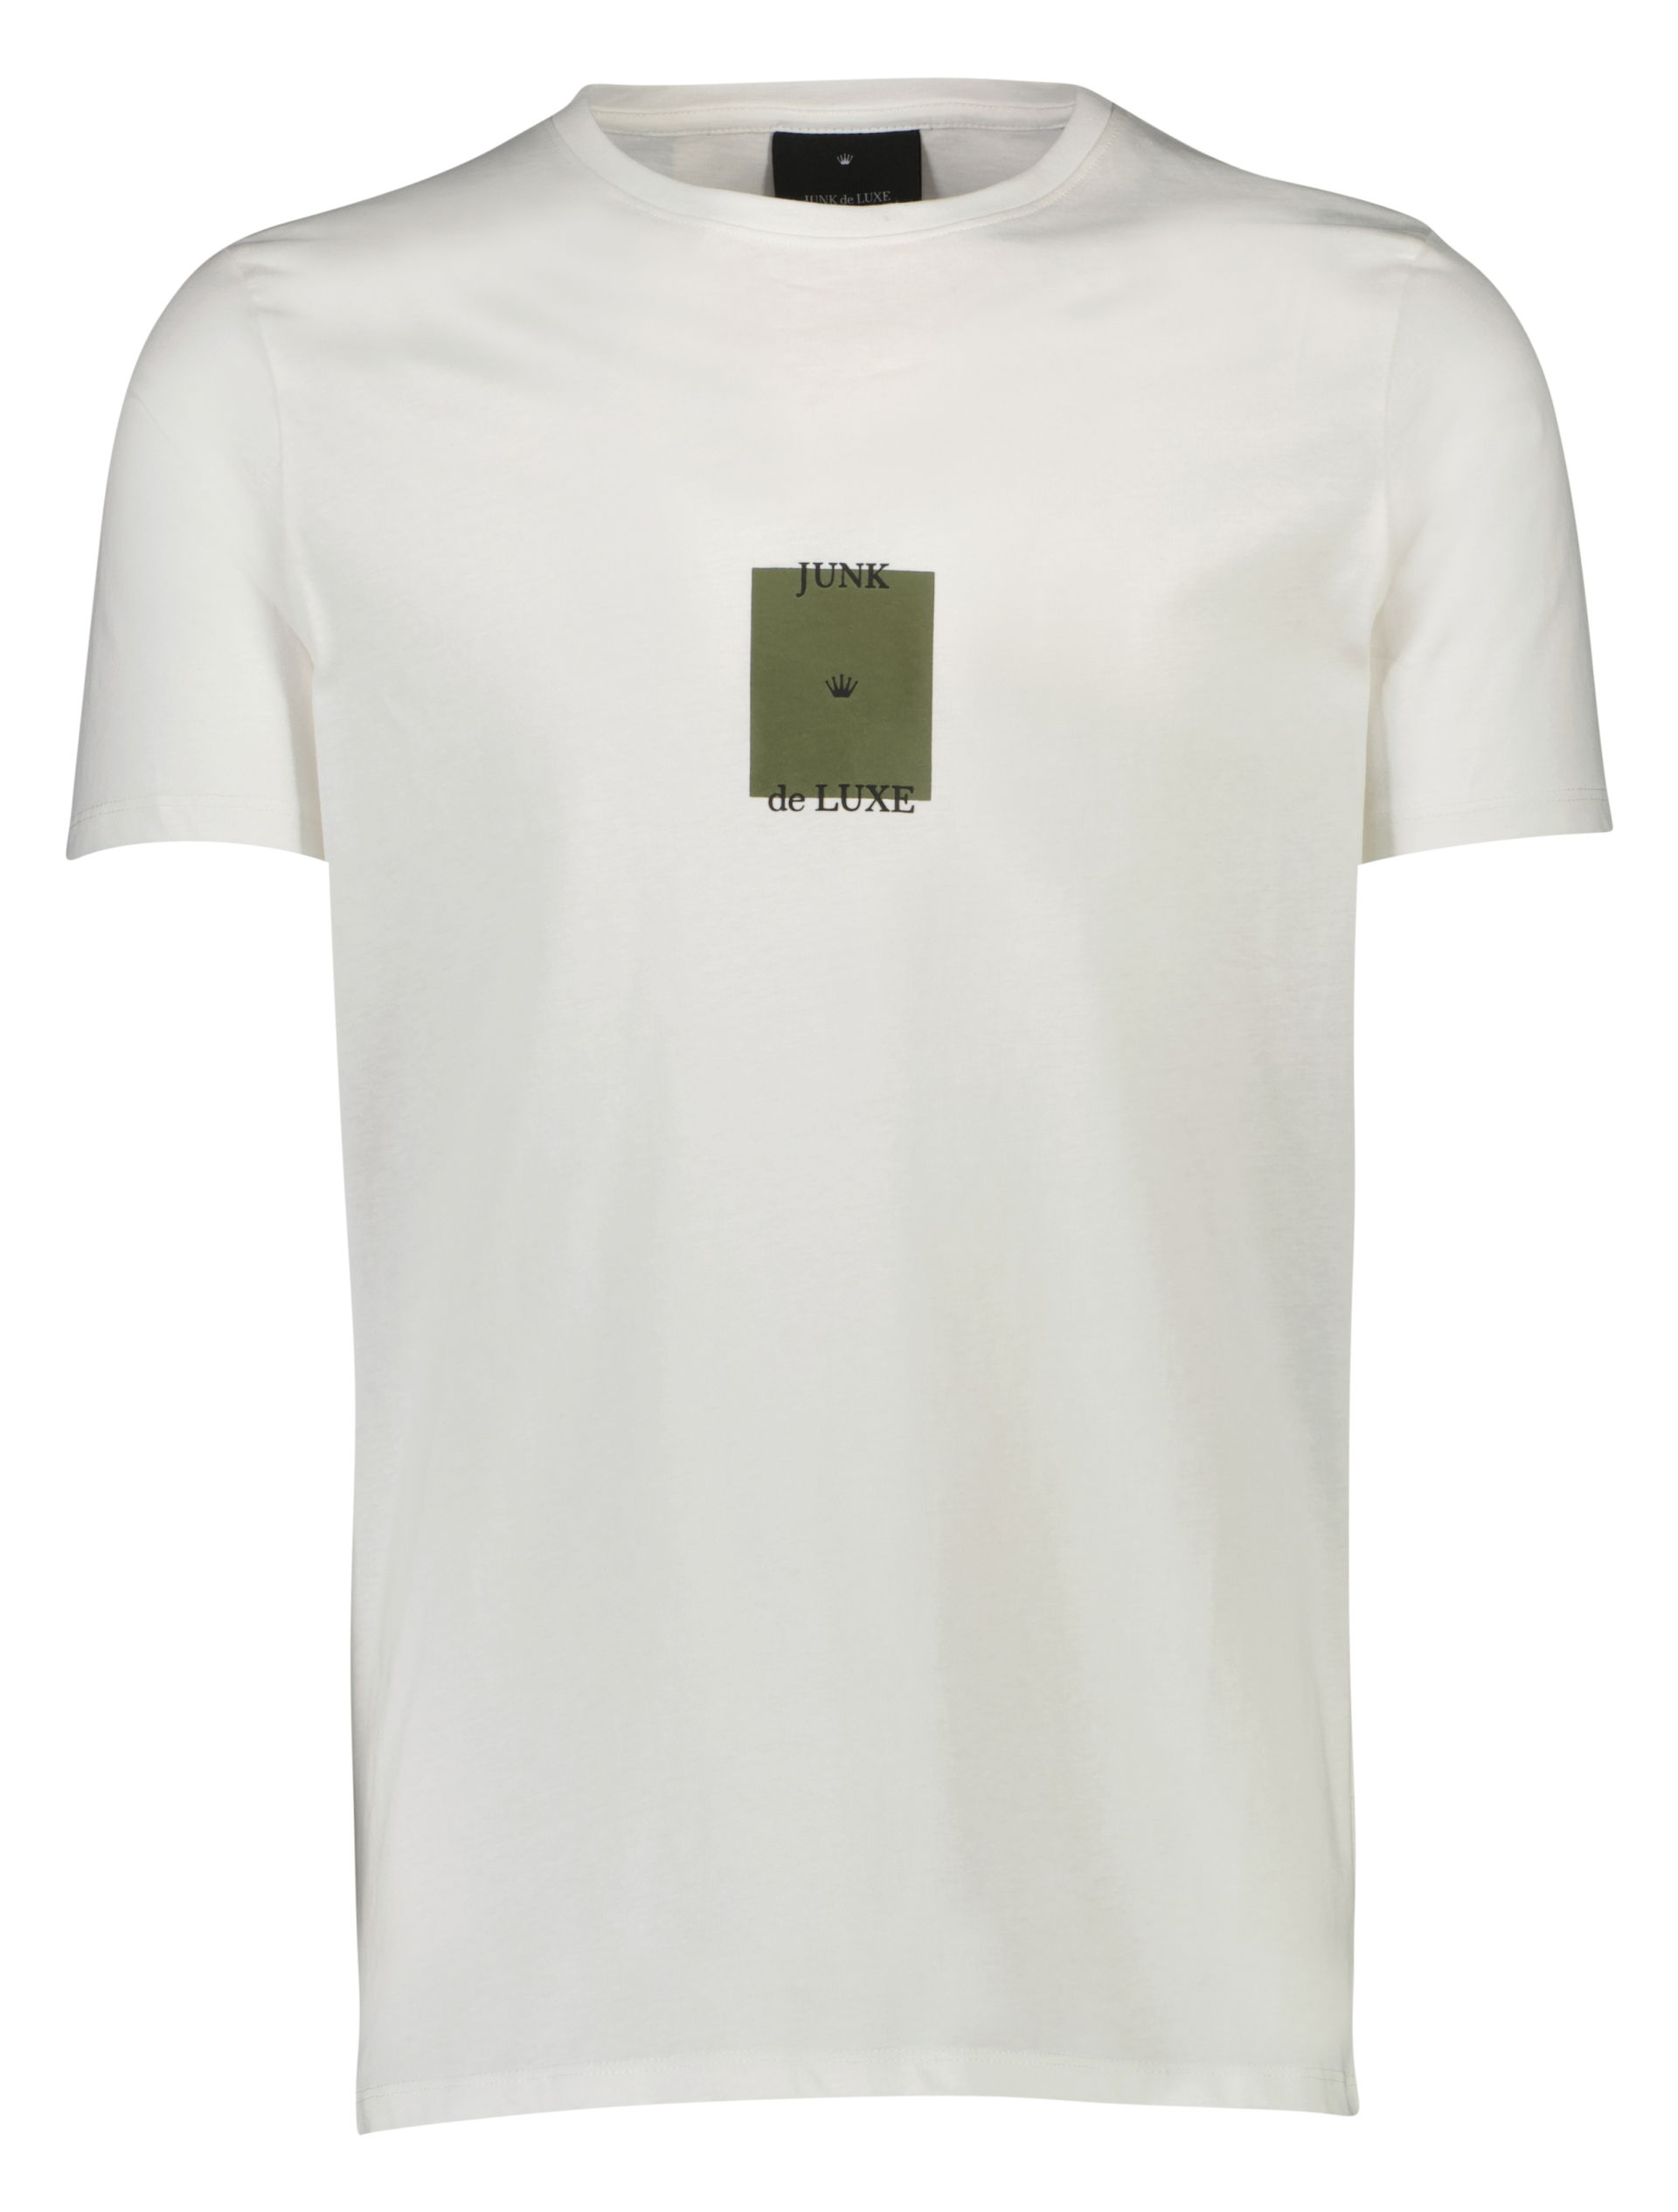 Junk de Luxe T-shirt vit / off white